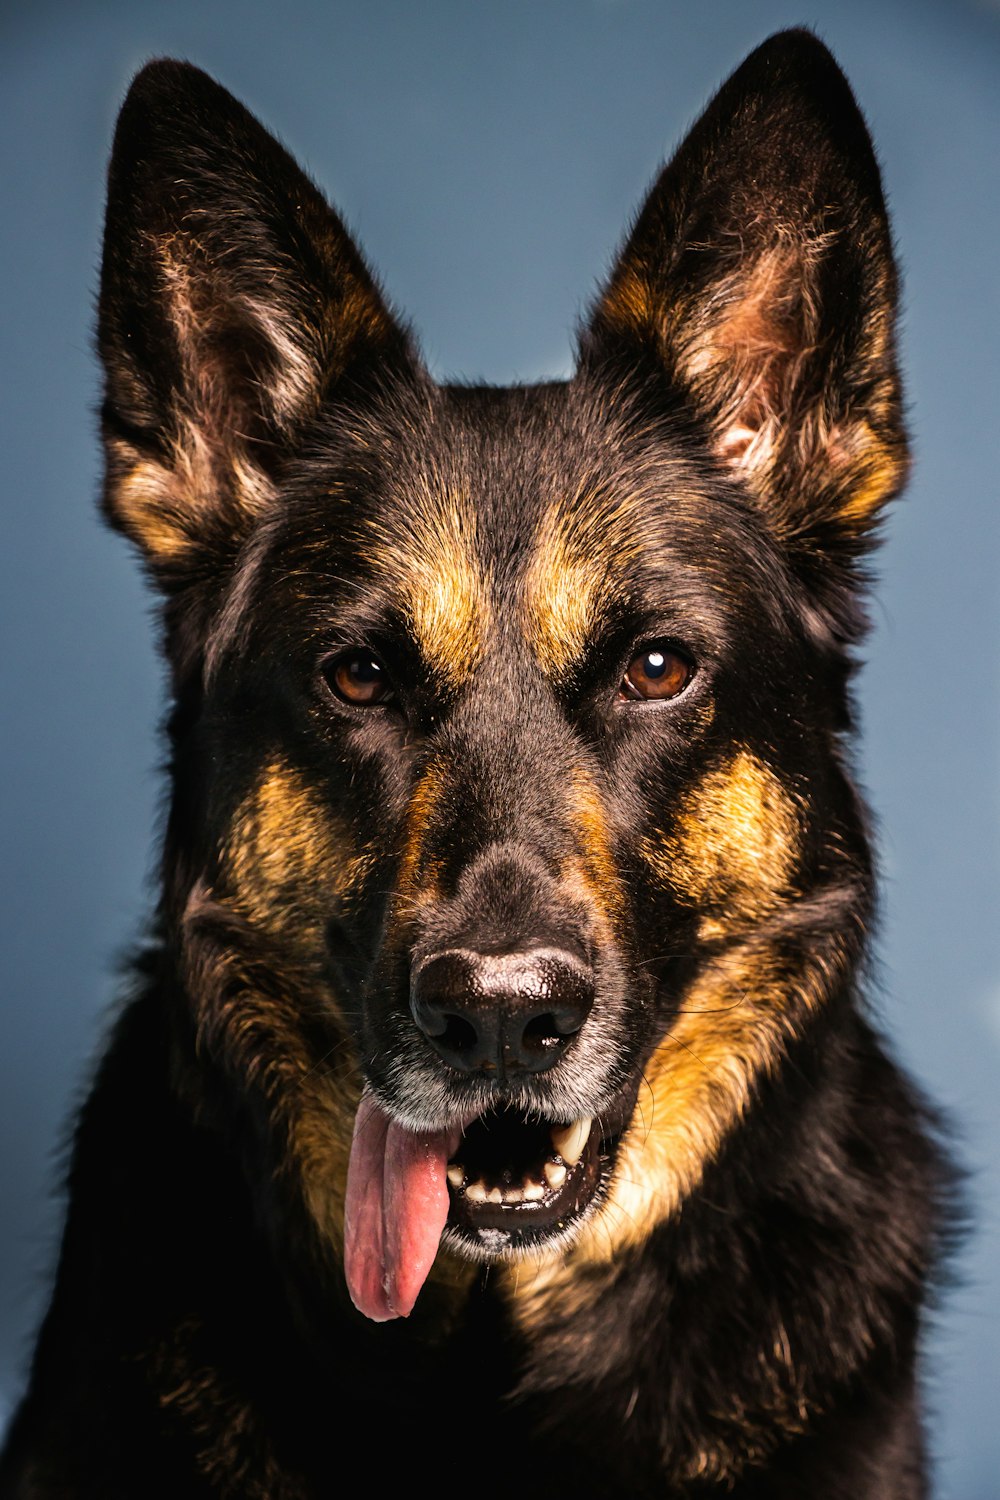 un gros plan d’un chien avec sa langue sortie